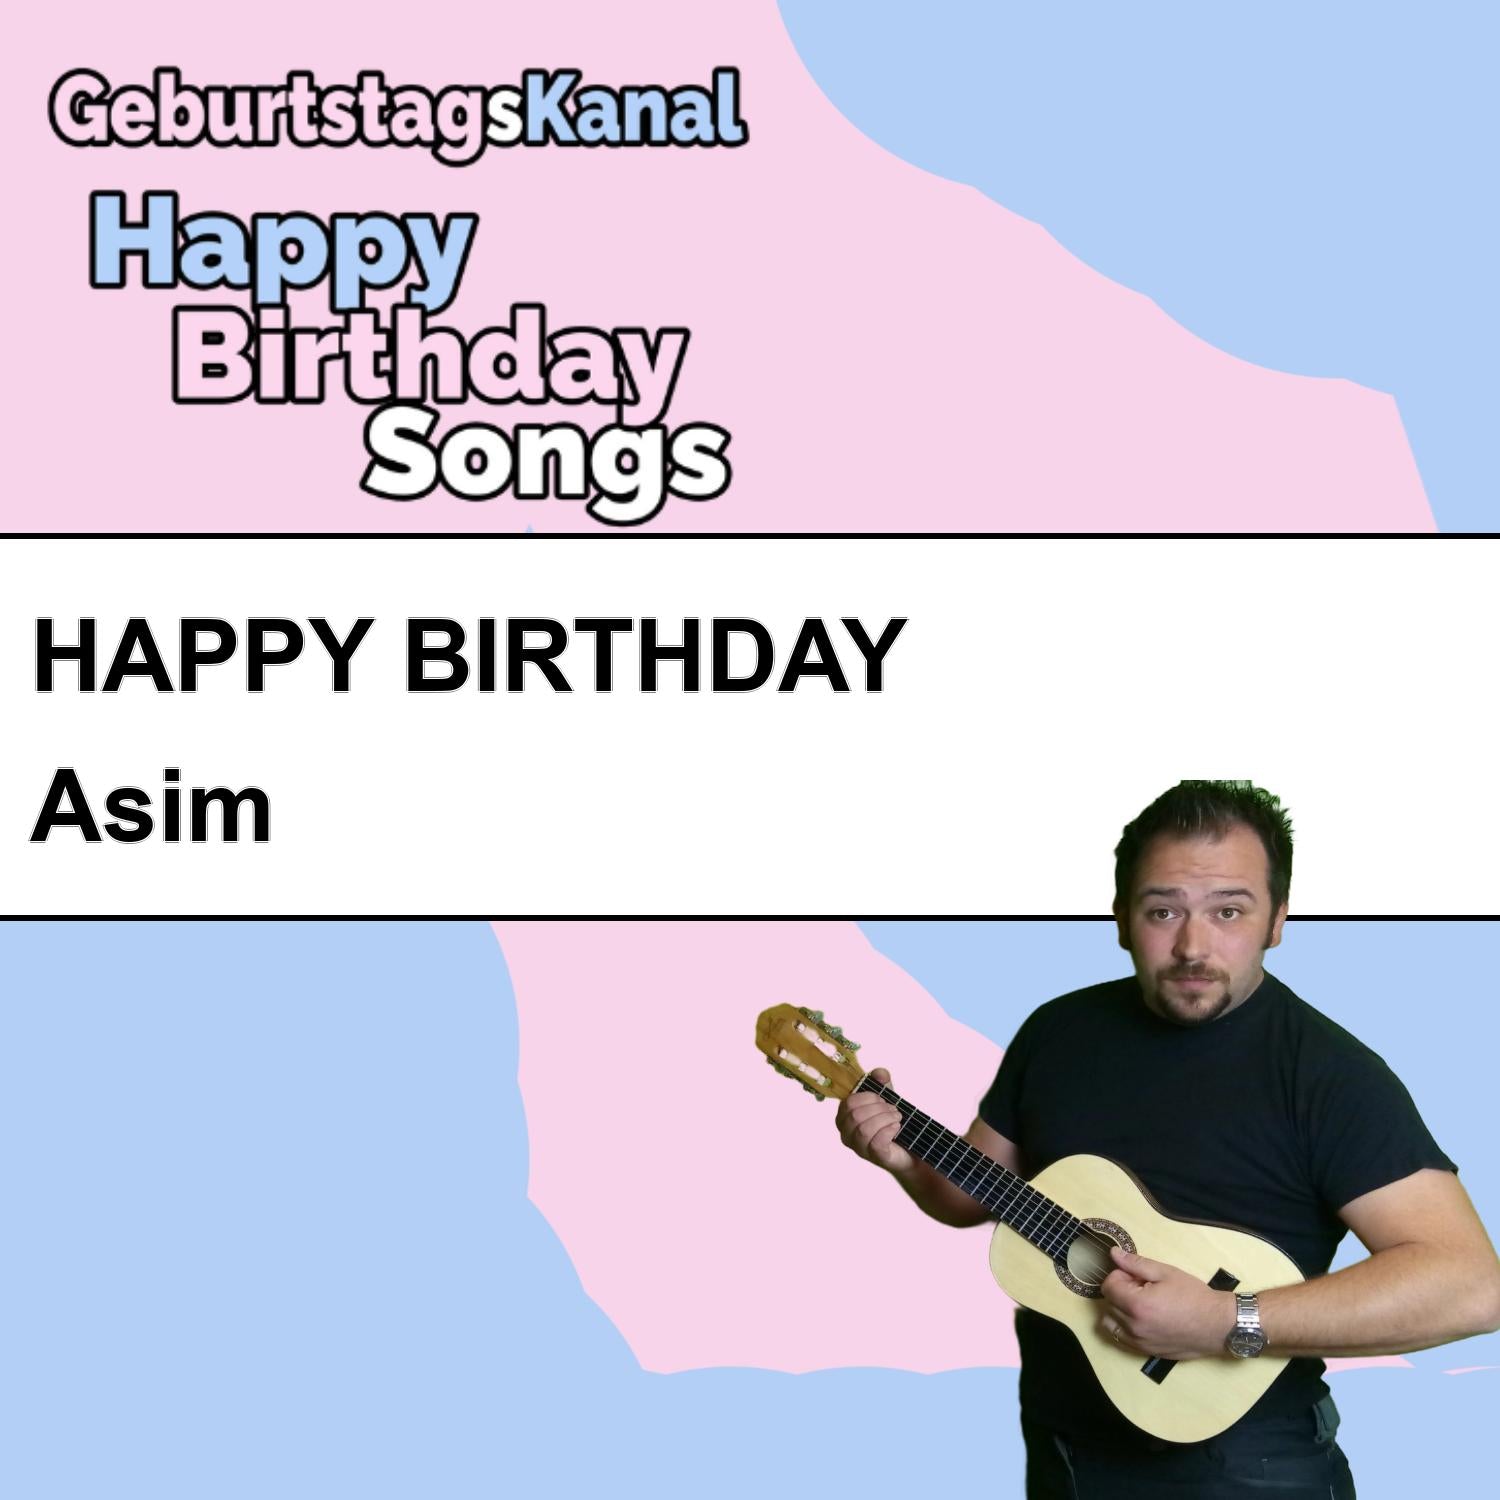 Produktbild Happy Birthday to you Asim mit Wunschgrußbotschaft